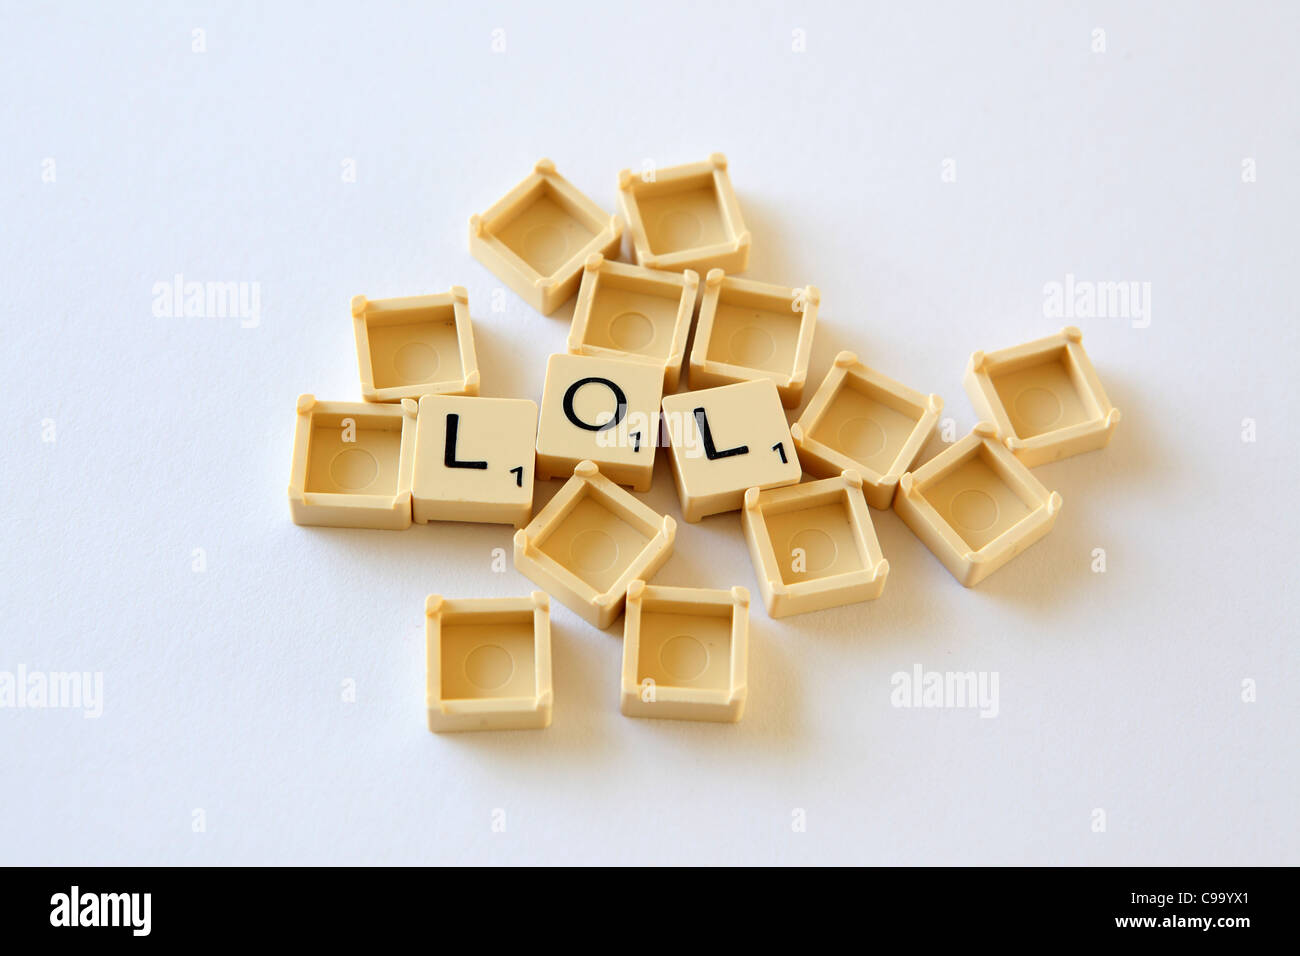 Piastrelle Scrabble / piazze compitare 'LOL' , sfondo bianco studio fotografico Foto Stock